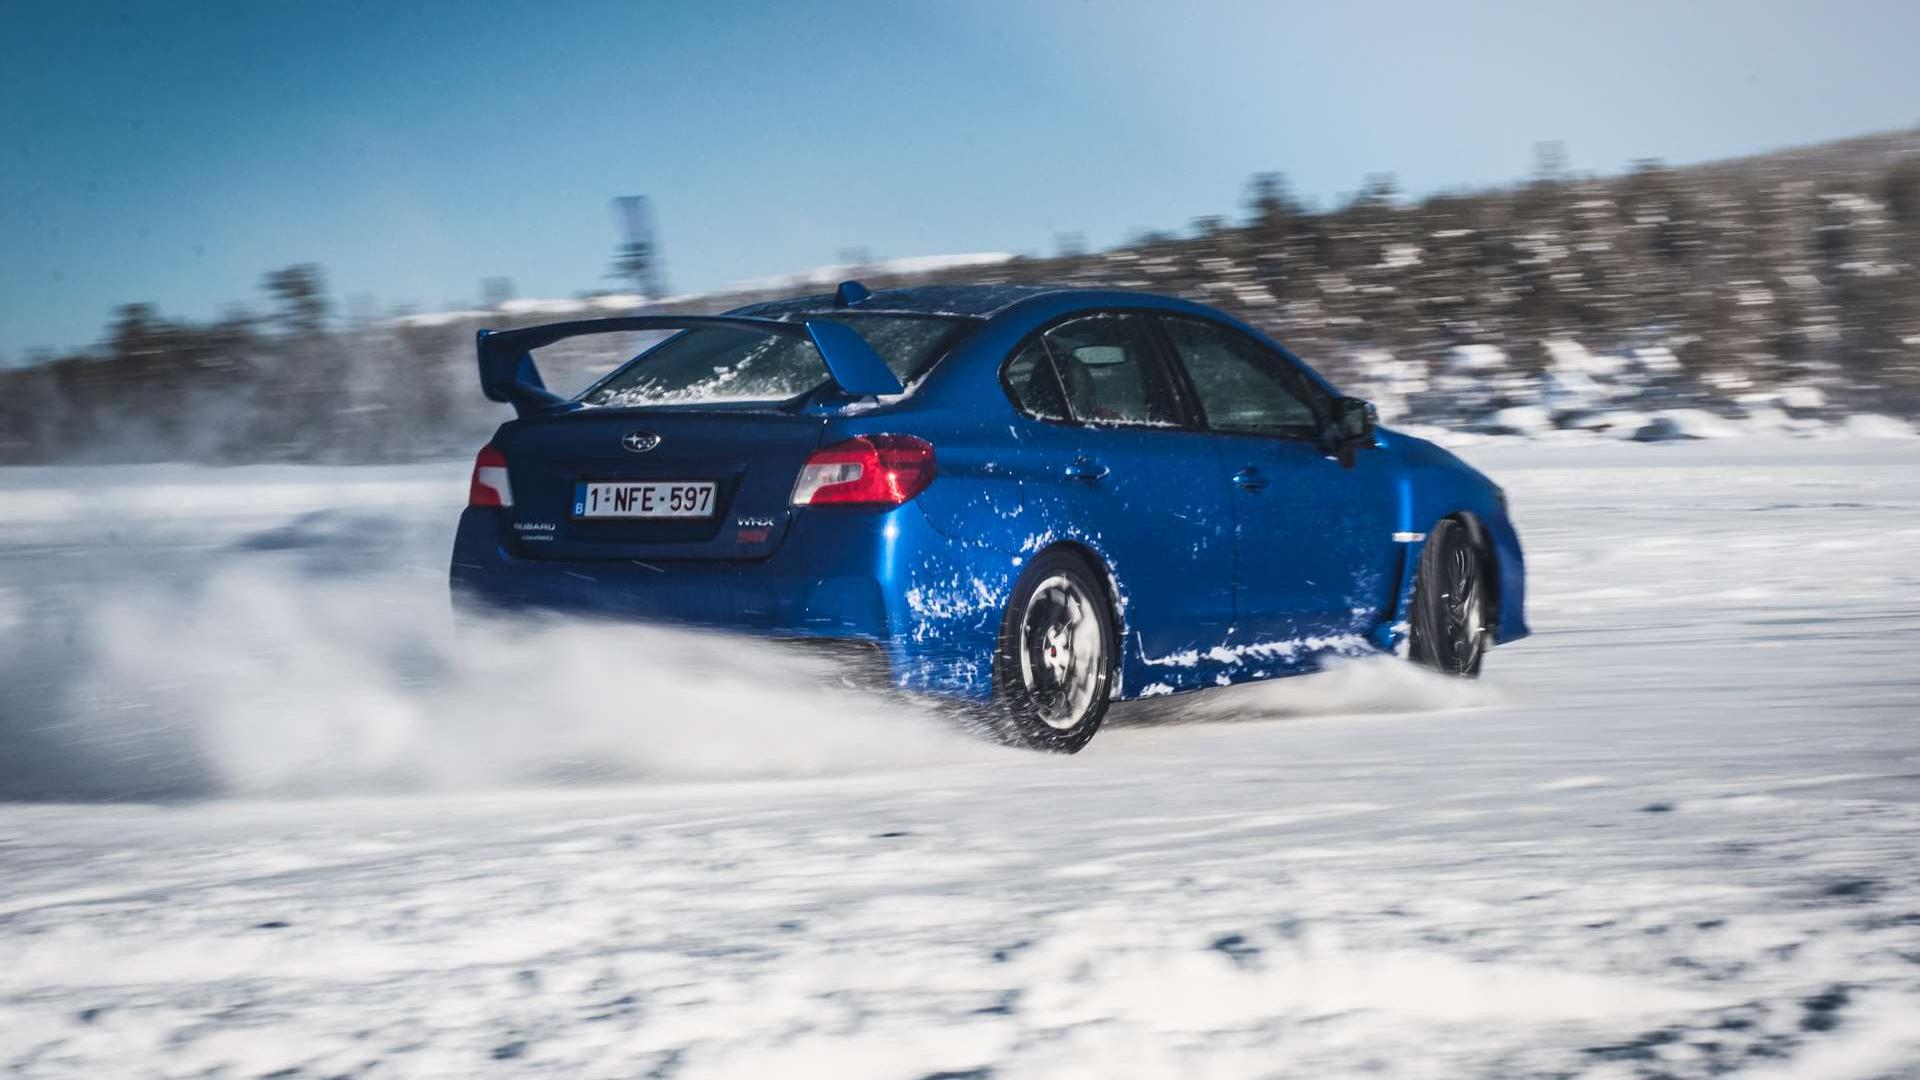 Jak Jeździć Po Śniegu? Uczymy Się Na Subaru Snow Drive • Autocentrum.pl